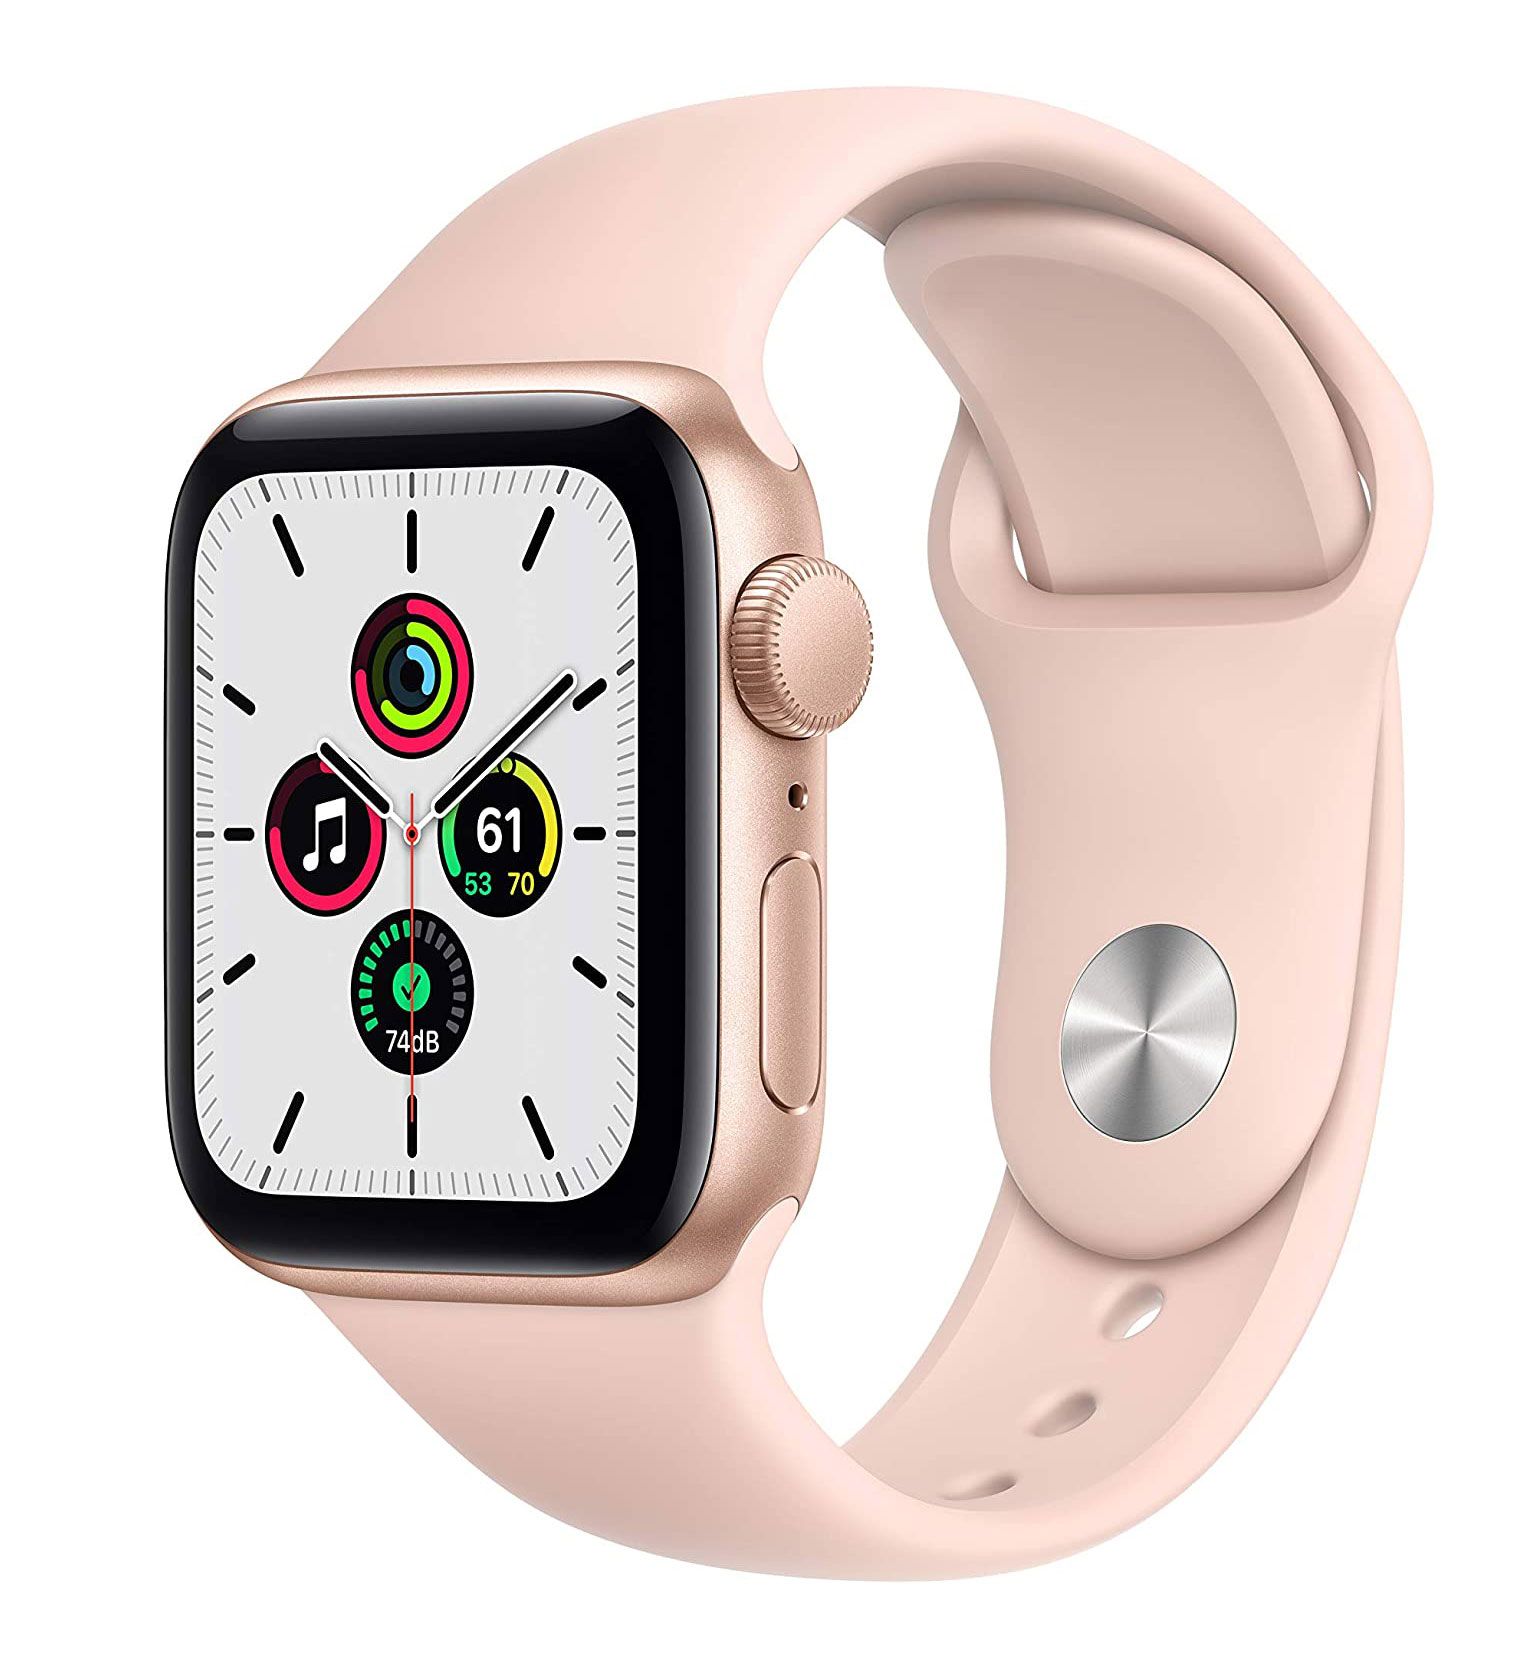 Parhaat lahjat, lahjaideoita naisille - Apple Watch SE